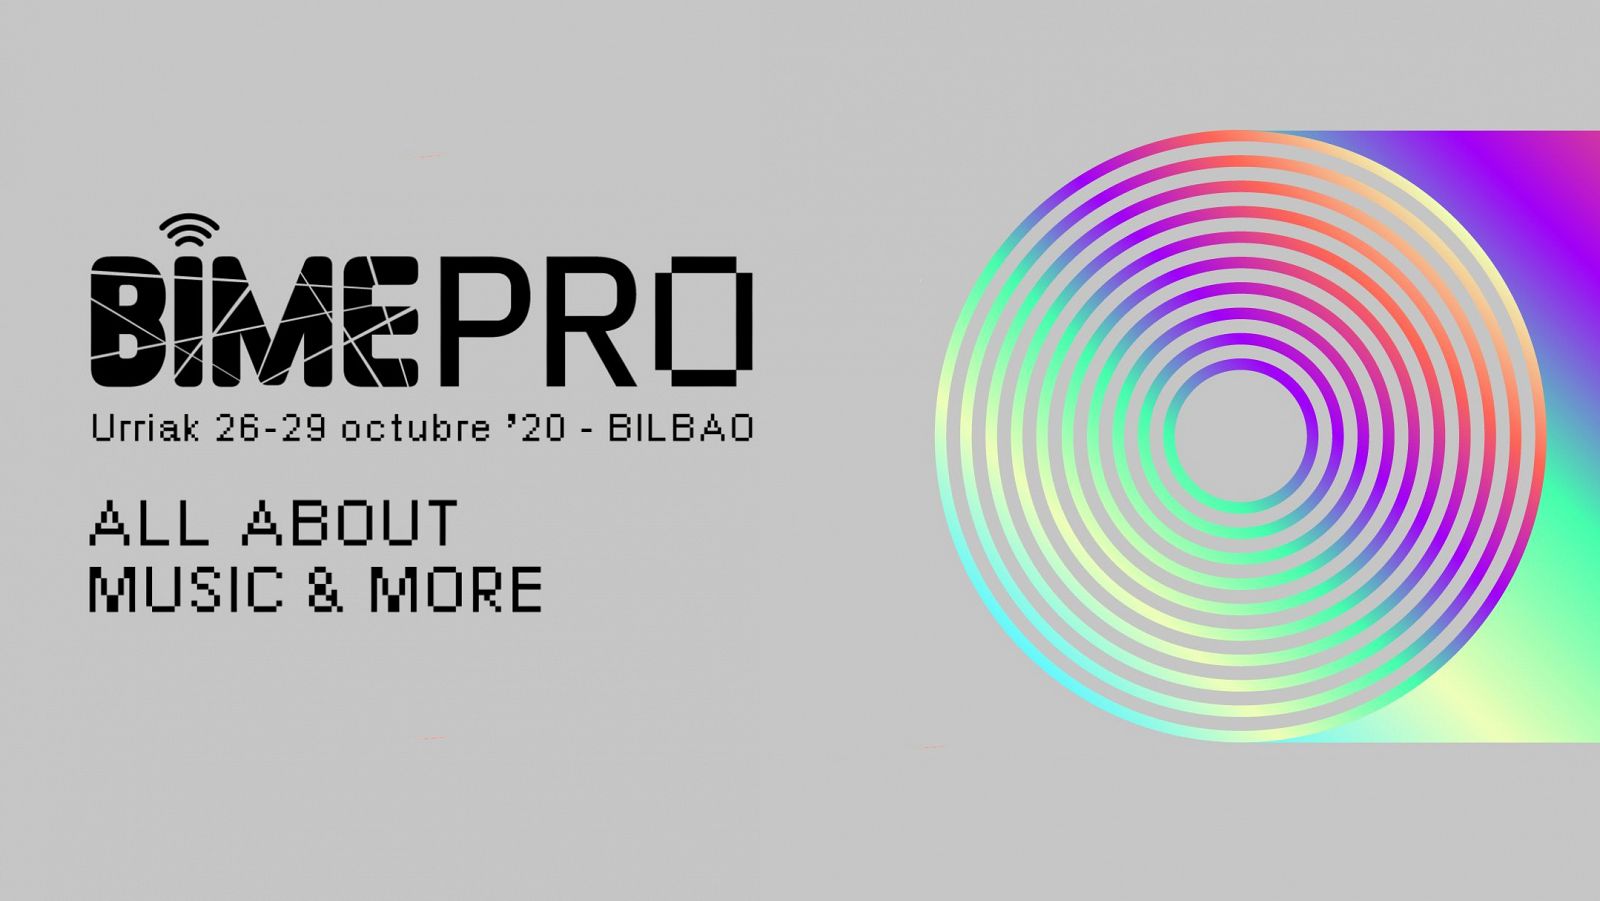 Las principales voces de la industria musical se dan cita en BIME Pro Bilbao